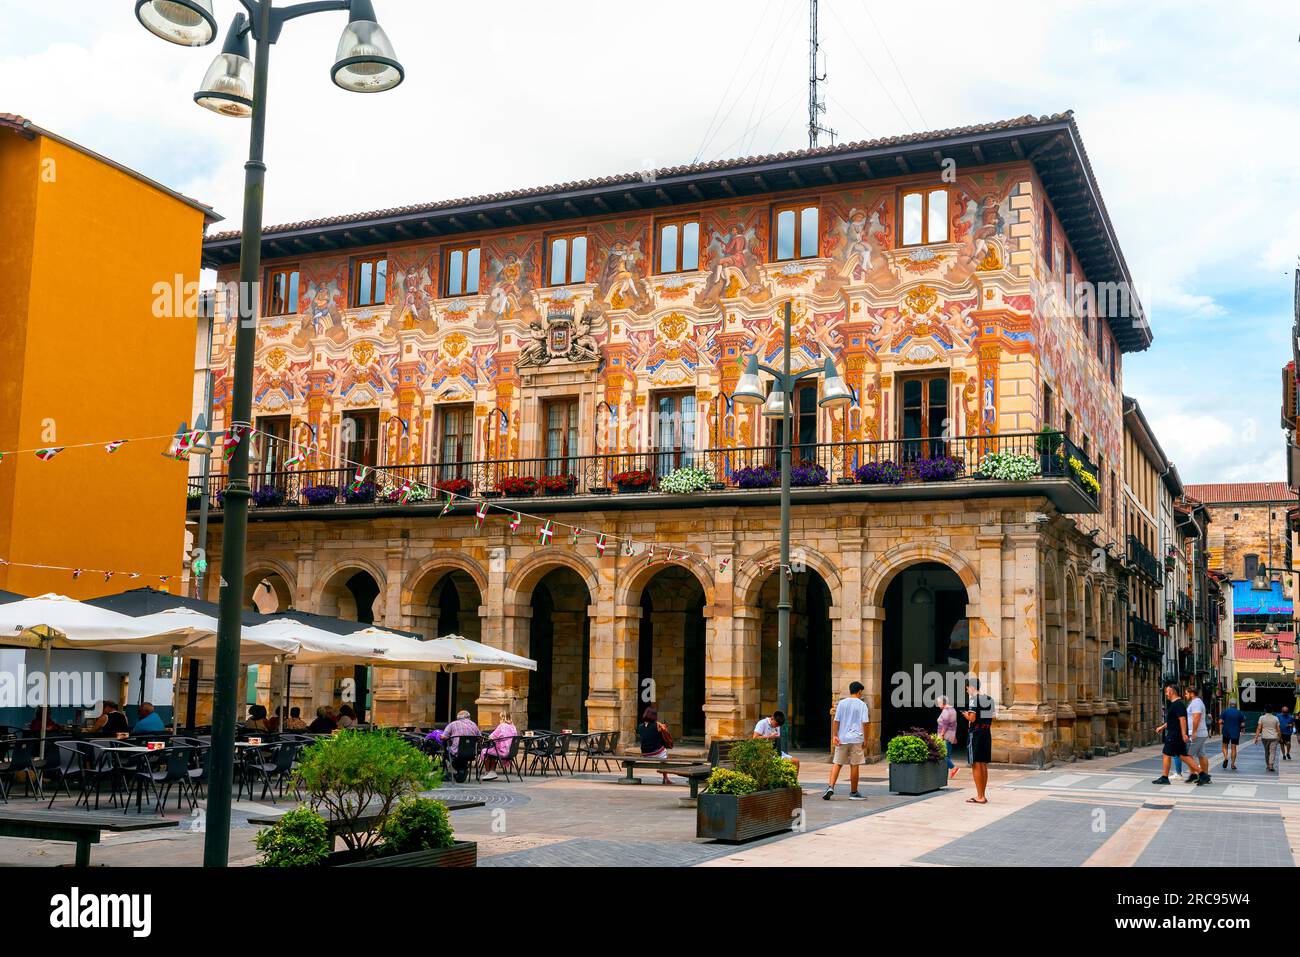 Rathaus Durango aus dem 17. Jahrhundert mit herrlicher Fassade; Gemeinde Durango, Tariba, Spanien. Stockfoto